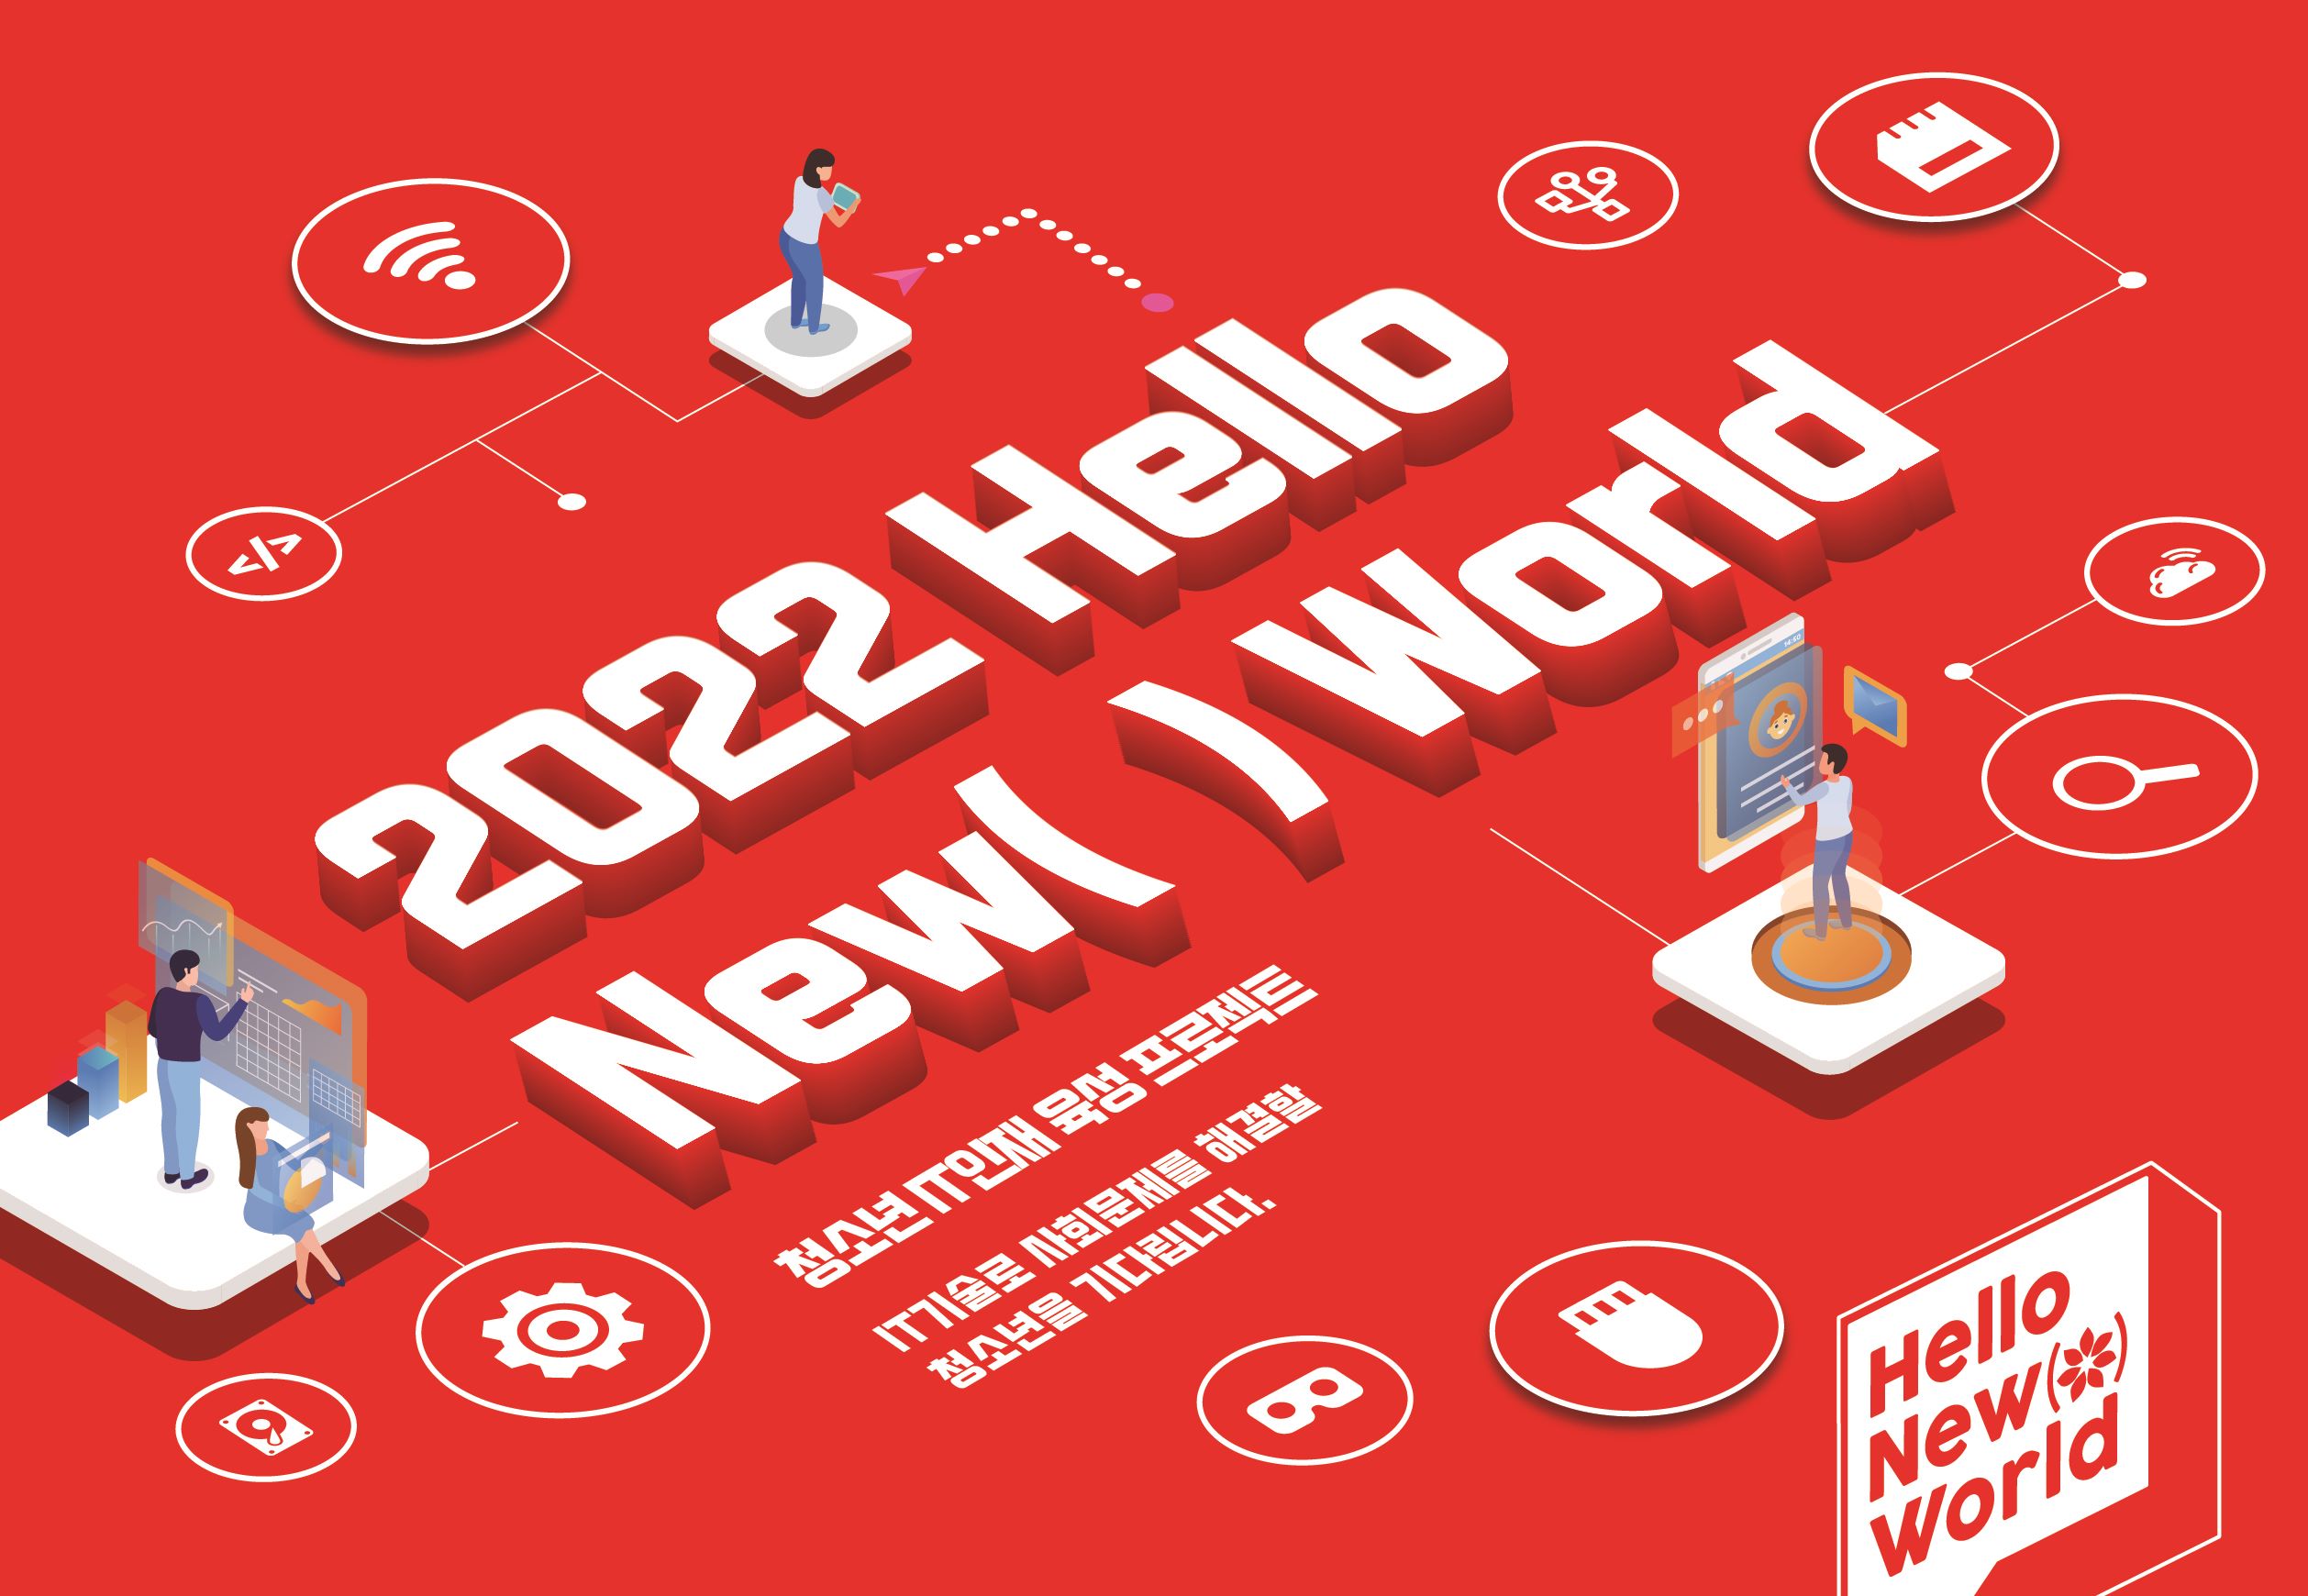 청소년 대상 해커톤 대회 ‘Hello New( ) World’ 참가자 모집